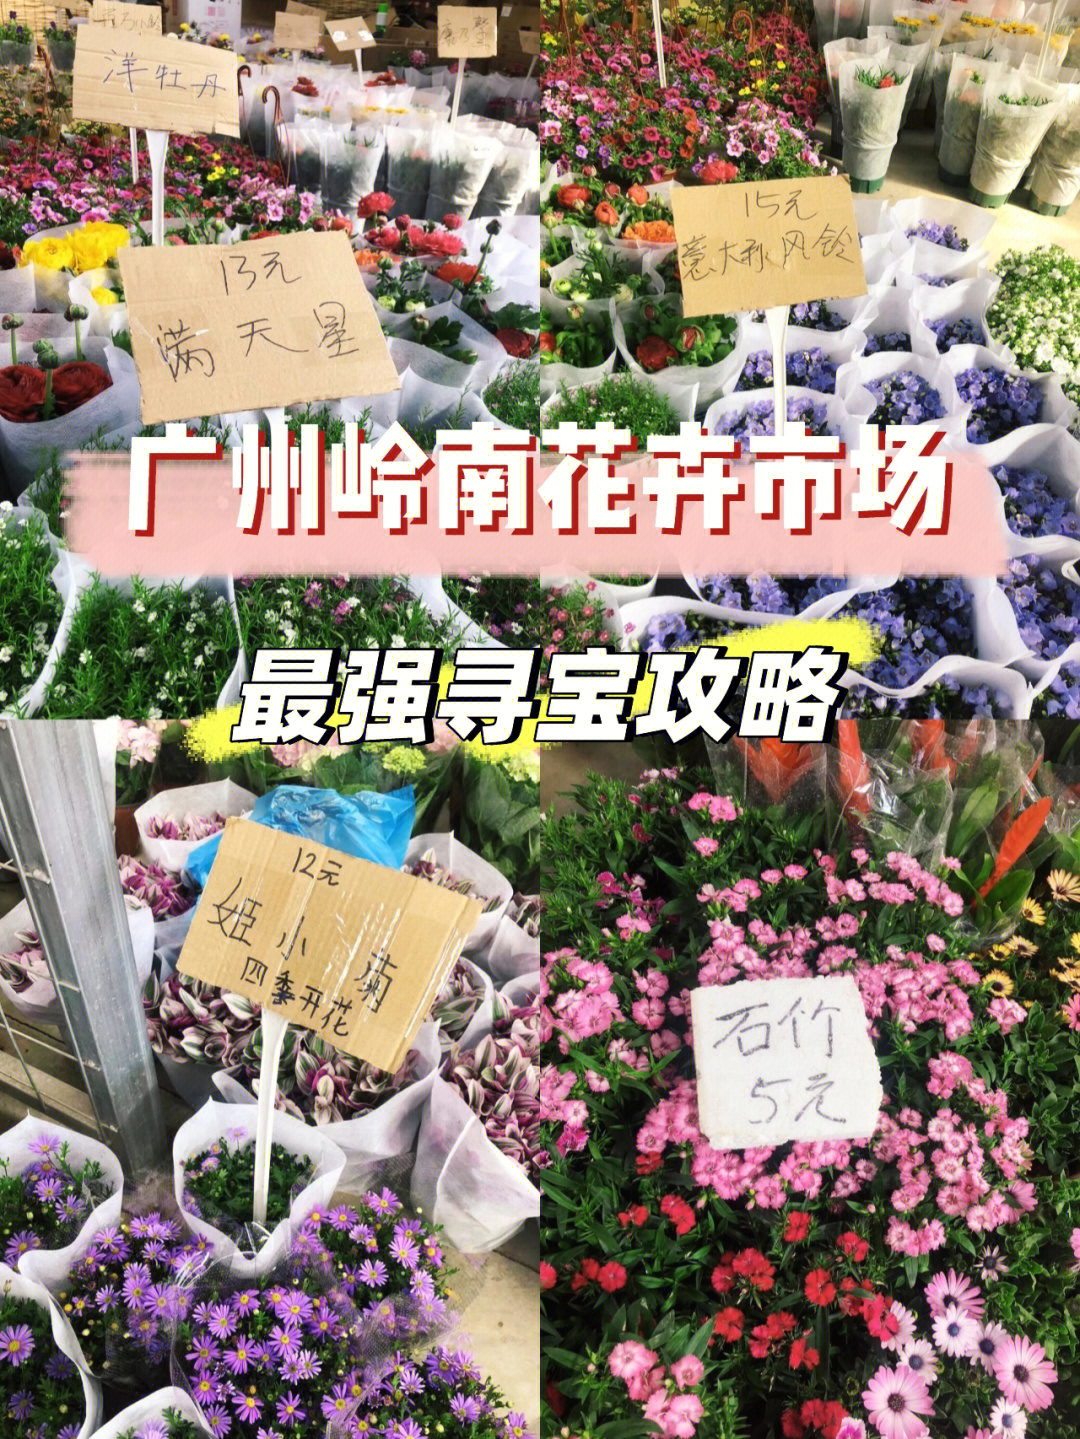 广州被称为花城94,当然少不了一个大型花卉市场,甚至在深圳东莞的小